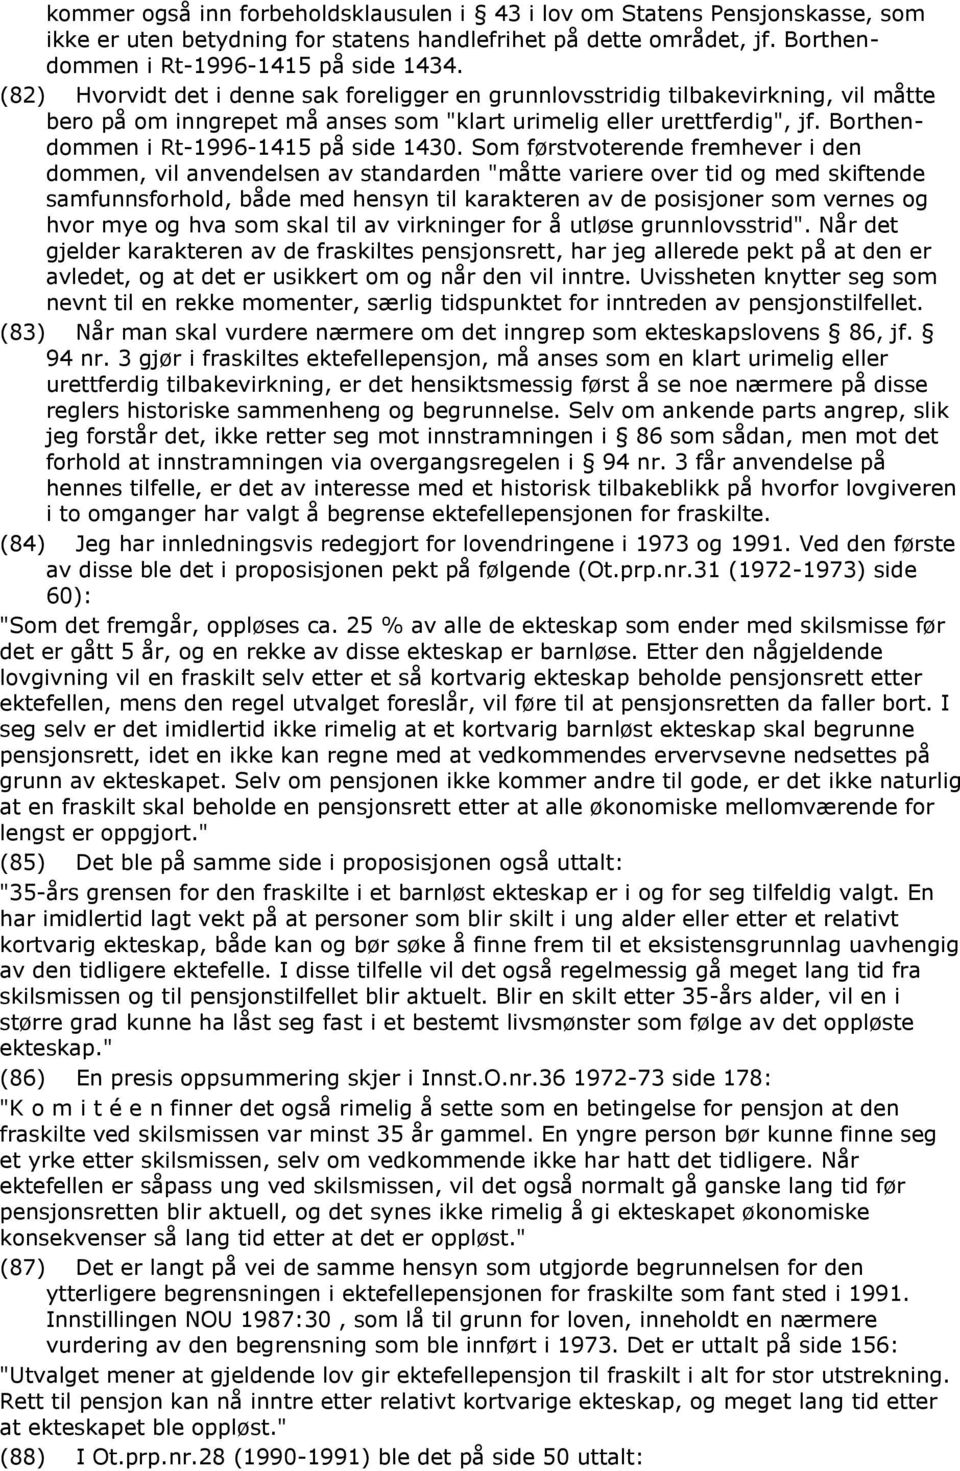 Borthendommen i Rt-1996-1415 på side 1430.